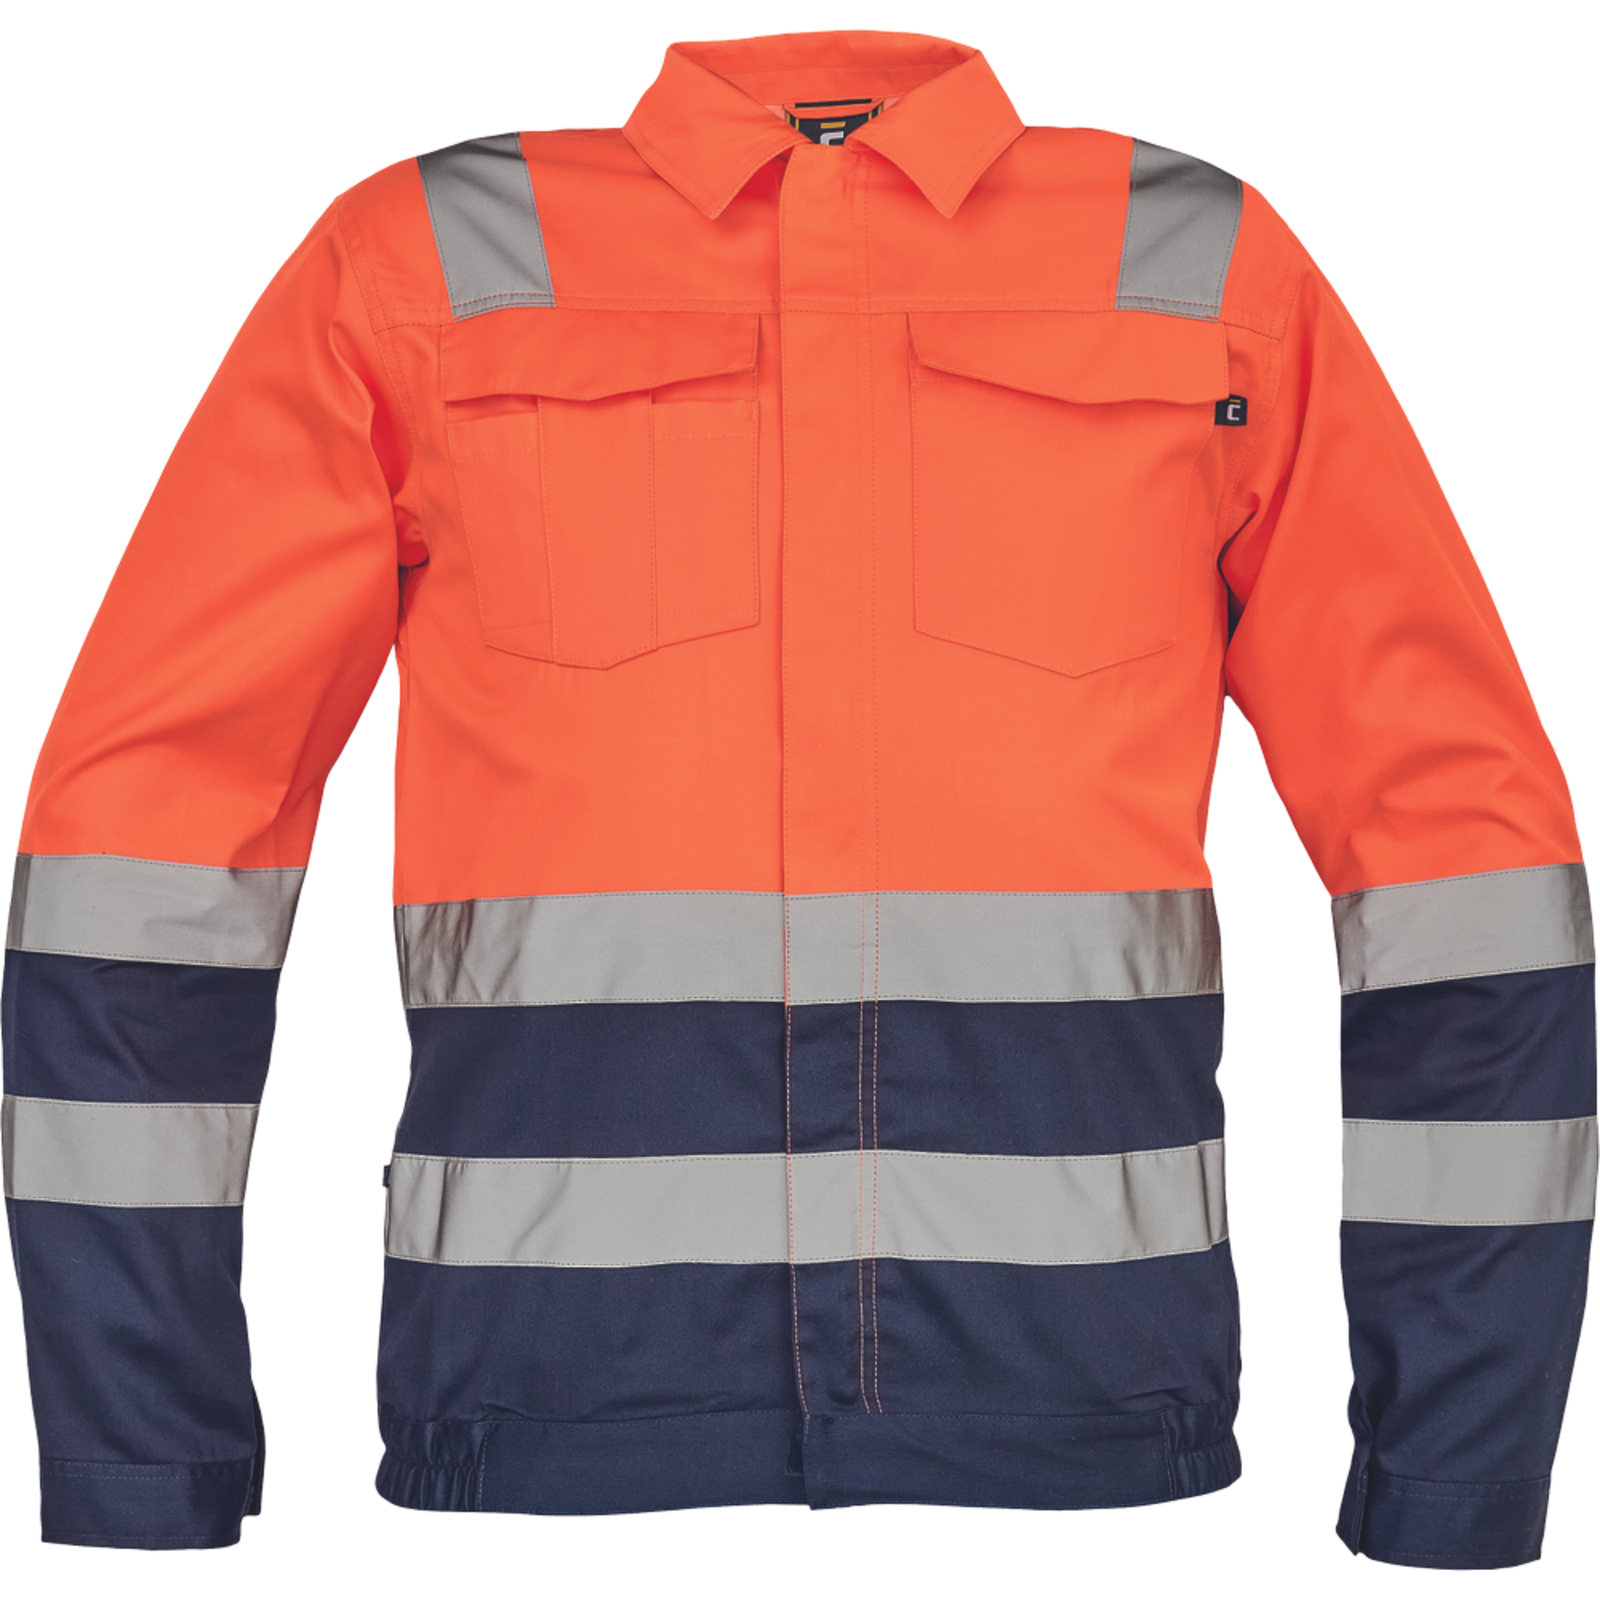 Reflexná pracovná bunda Cerva Valencia HV - veľkosť: 50, farba: oranžová/navy